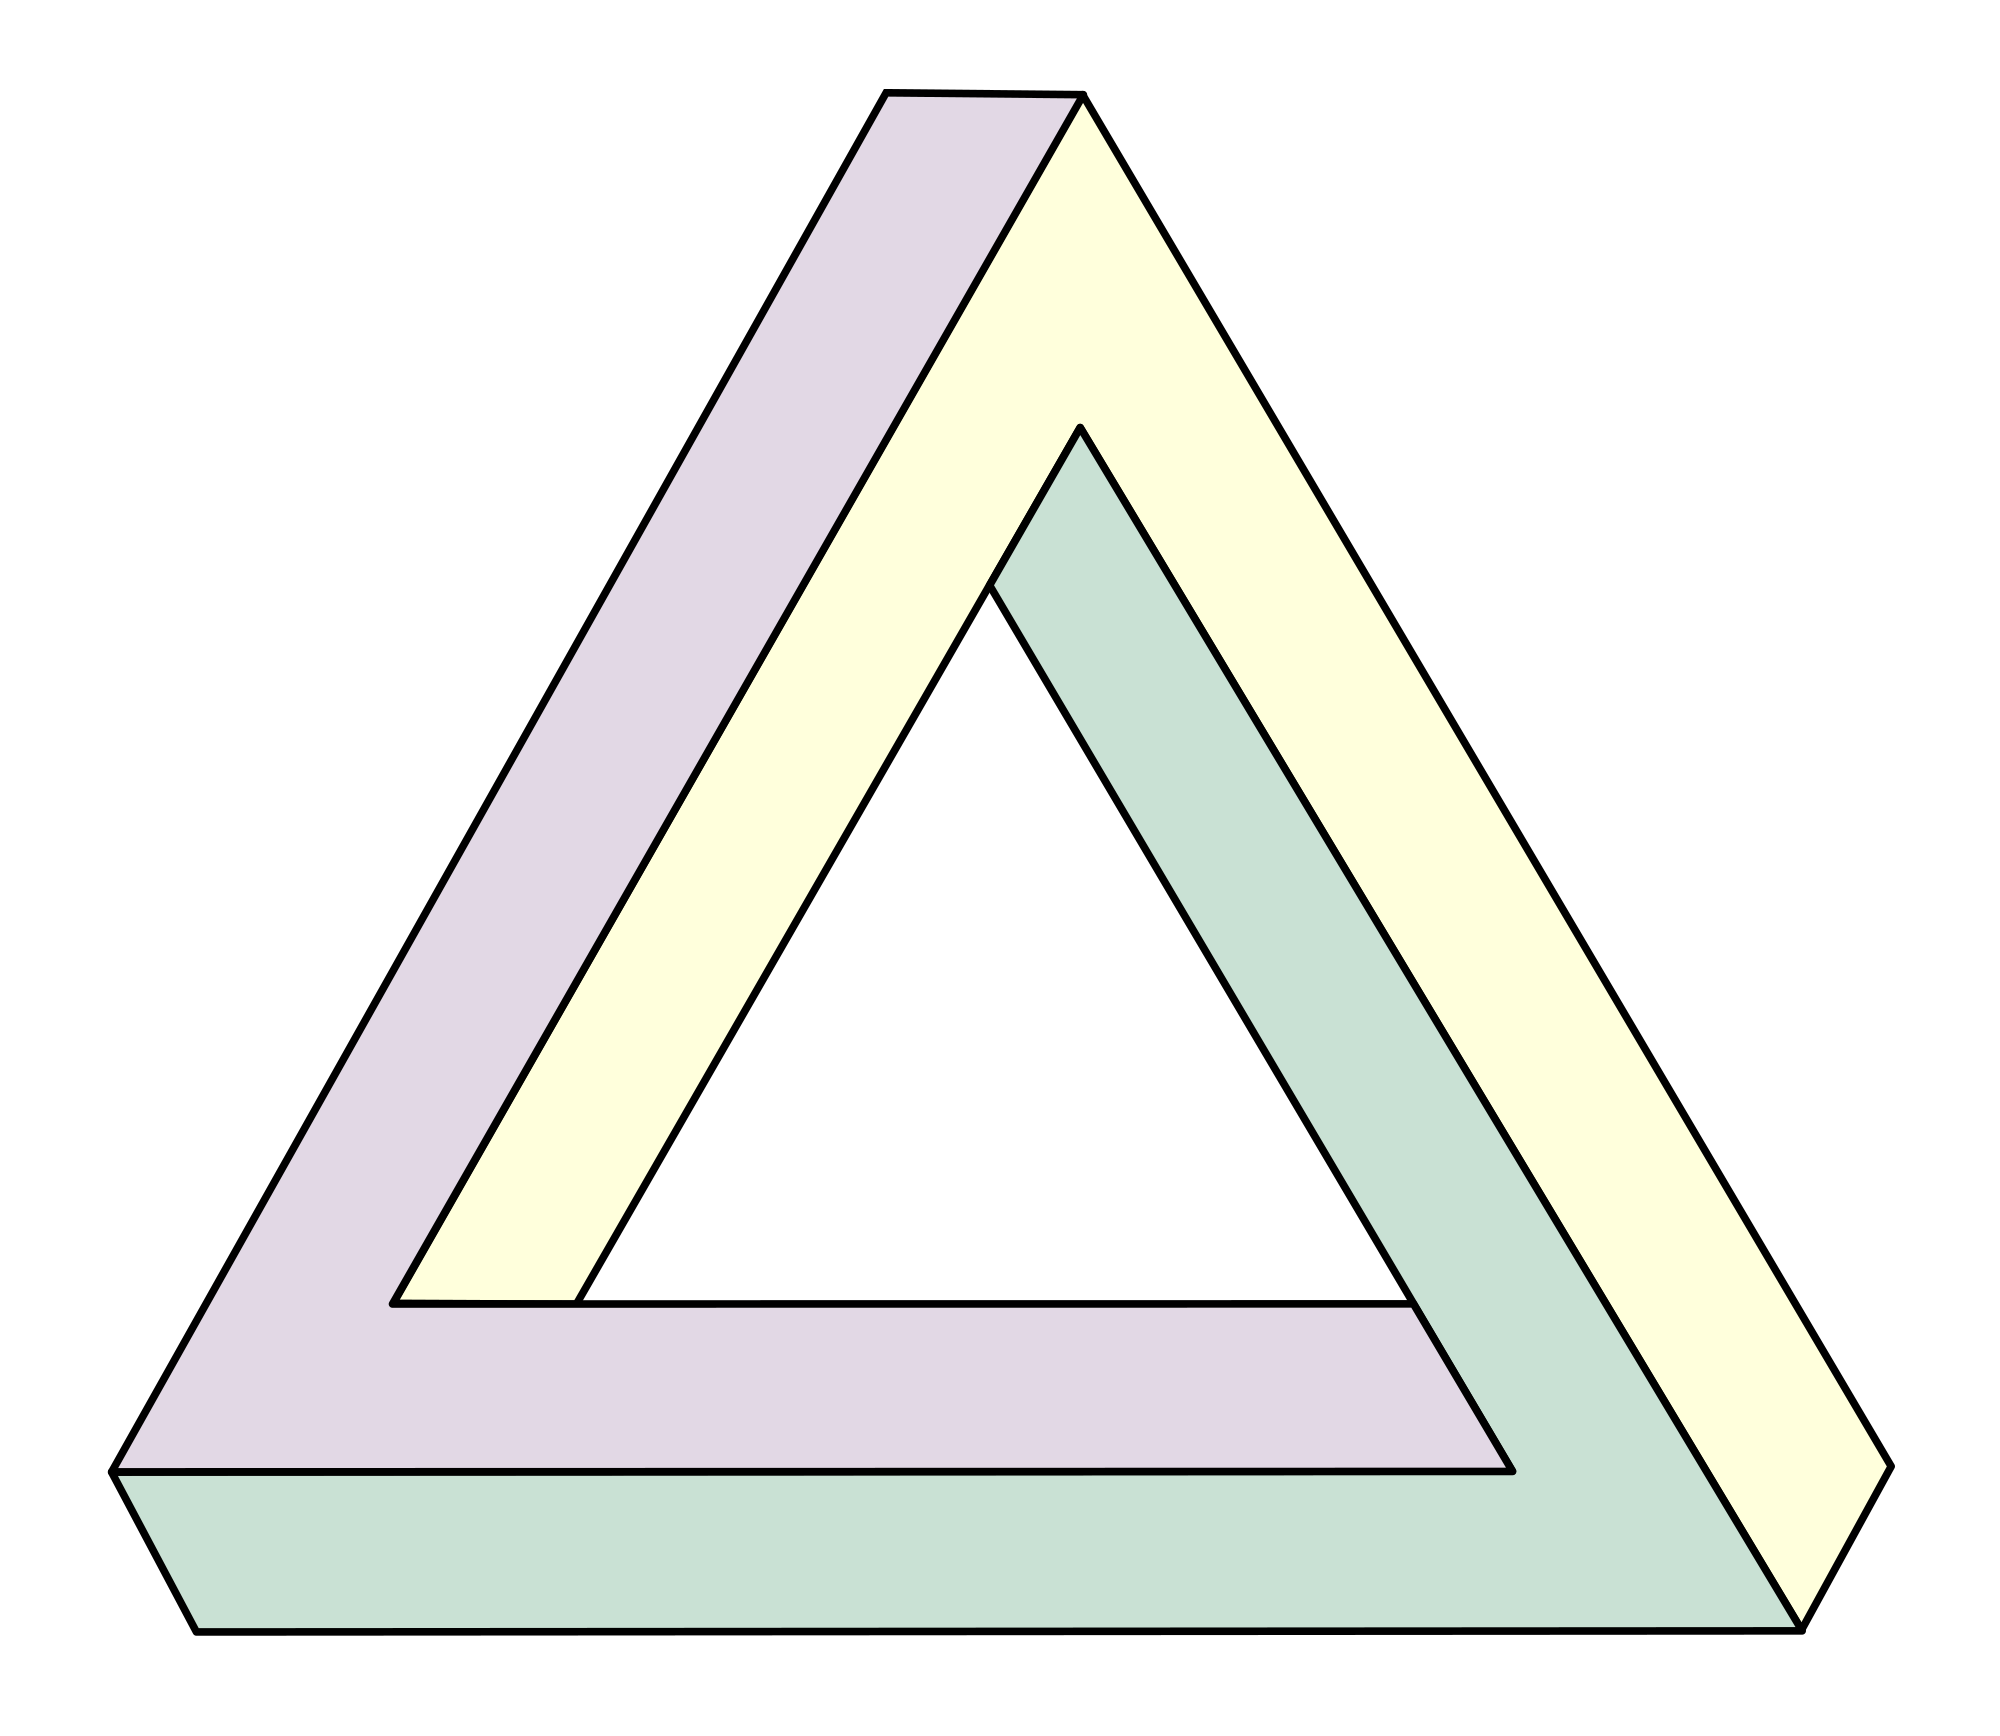 the Penrose triangle